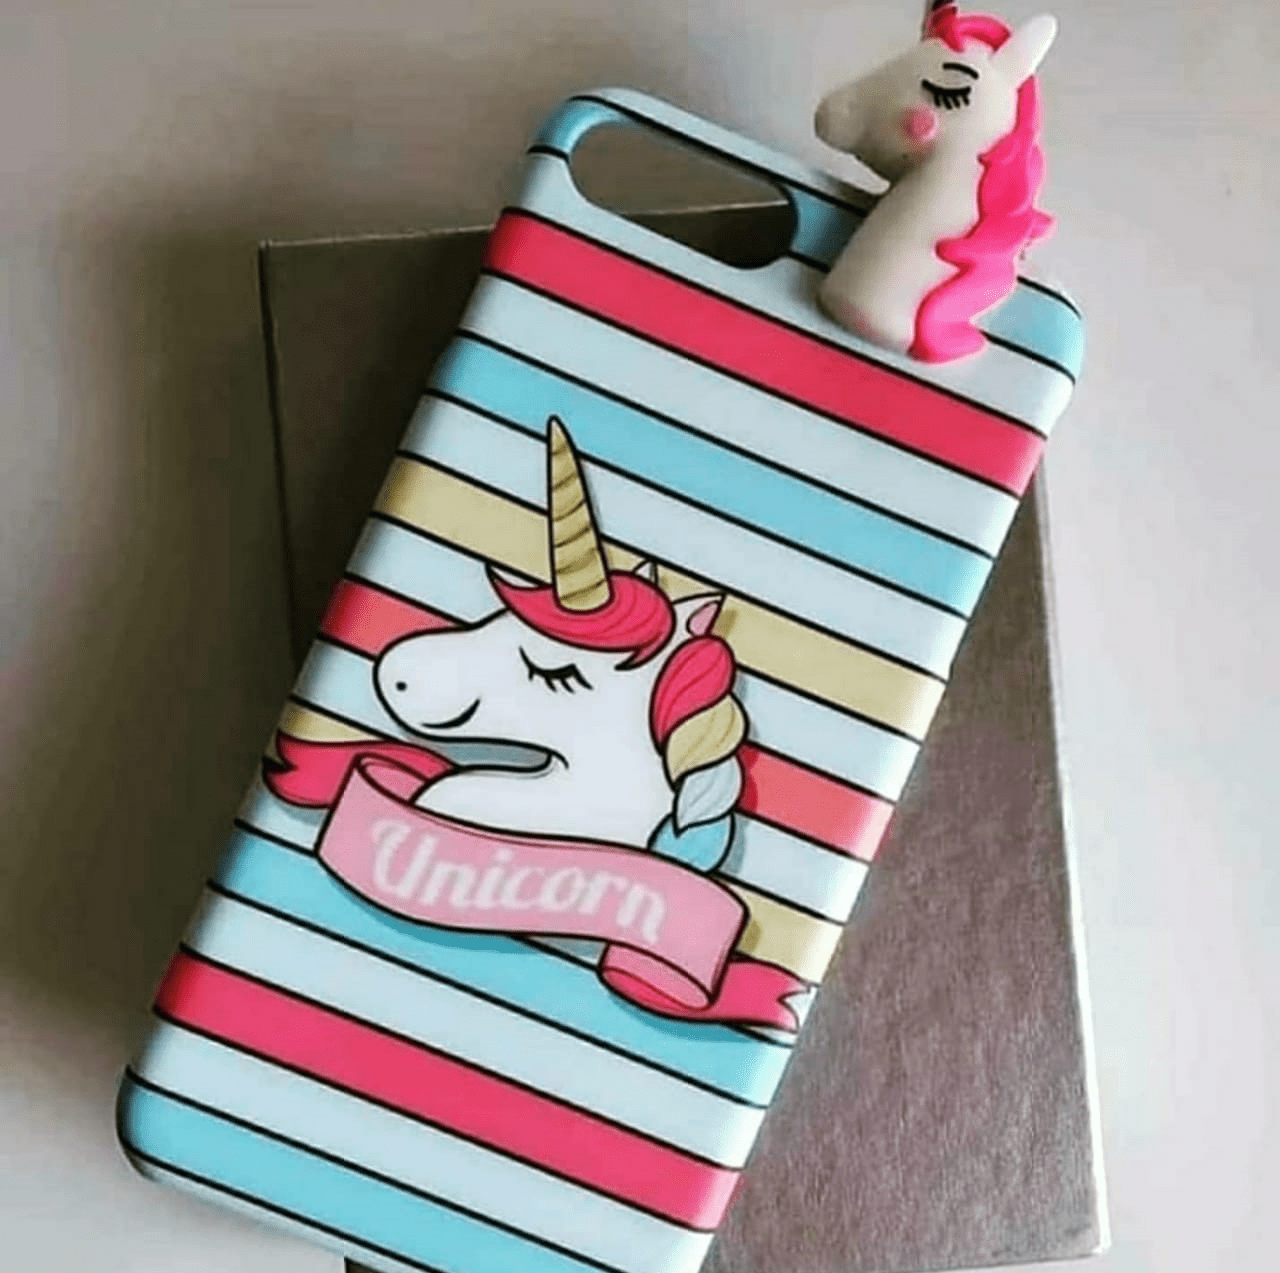 Colorful Unicorn toy case